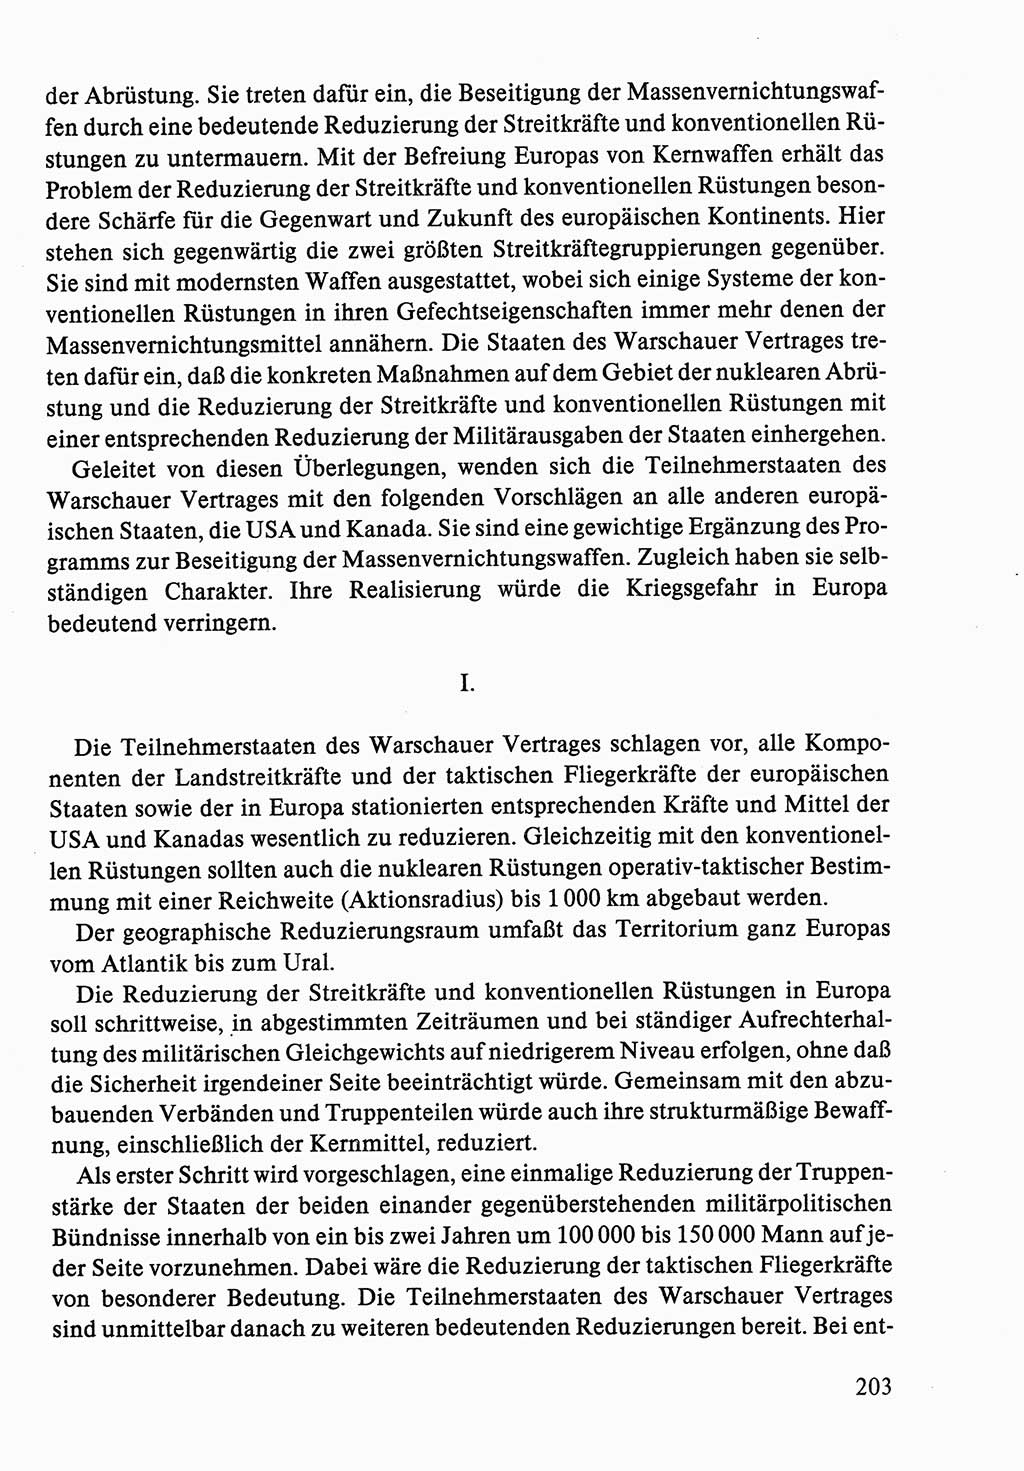 Dokumente der Sozialistischen Einheitspartei Deutschlands (SED) [Deutsche Demokratische Republik (DDR)] 1986-1987, Seite 203 (Dok. SED DDR 1986-1987, S. 203)